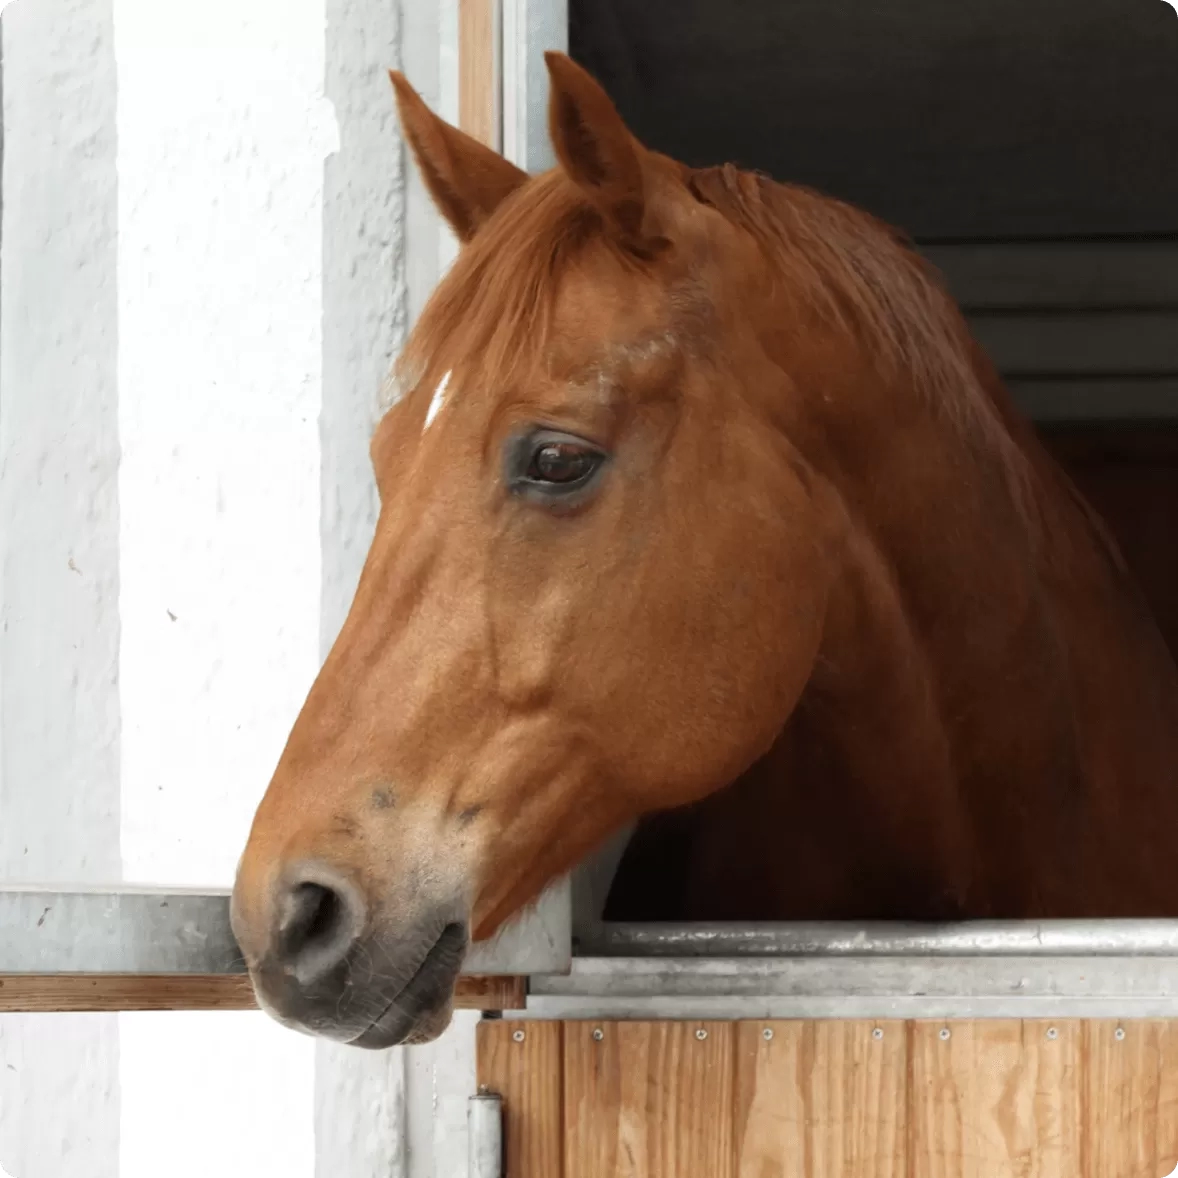 Horse looking over stable doors